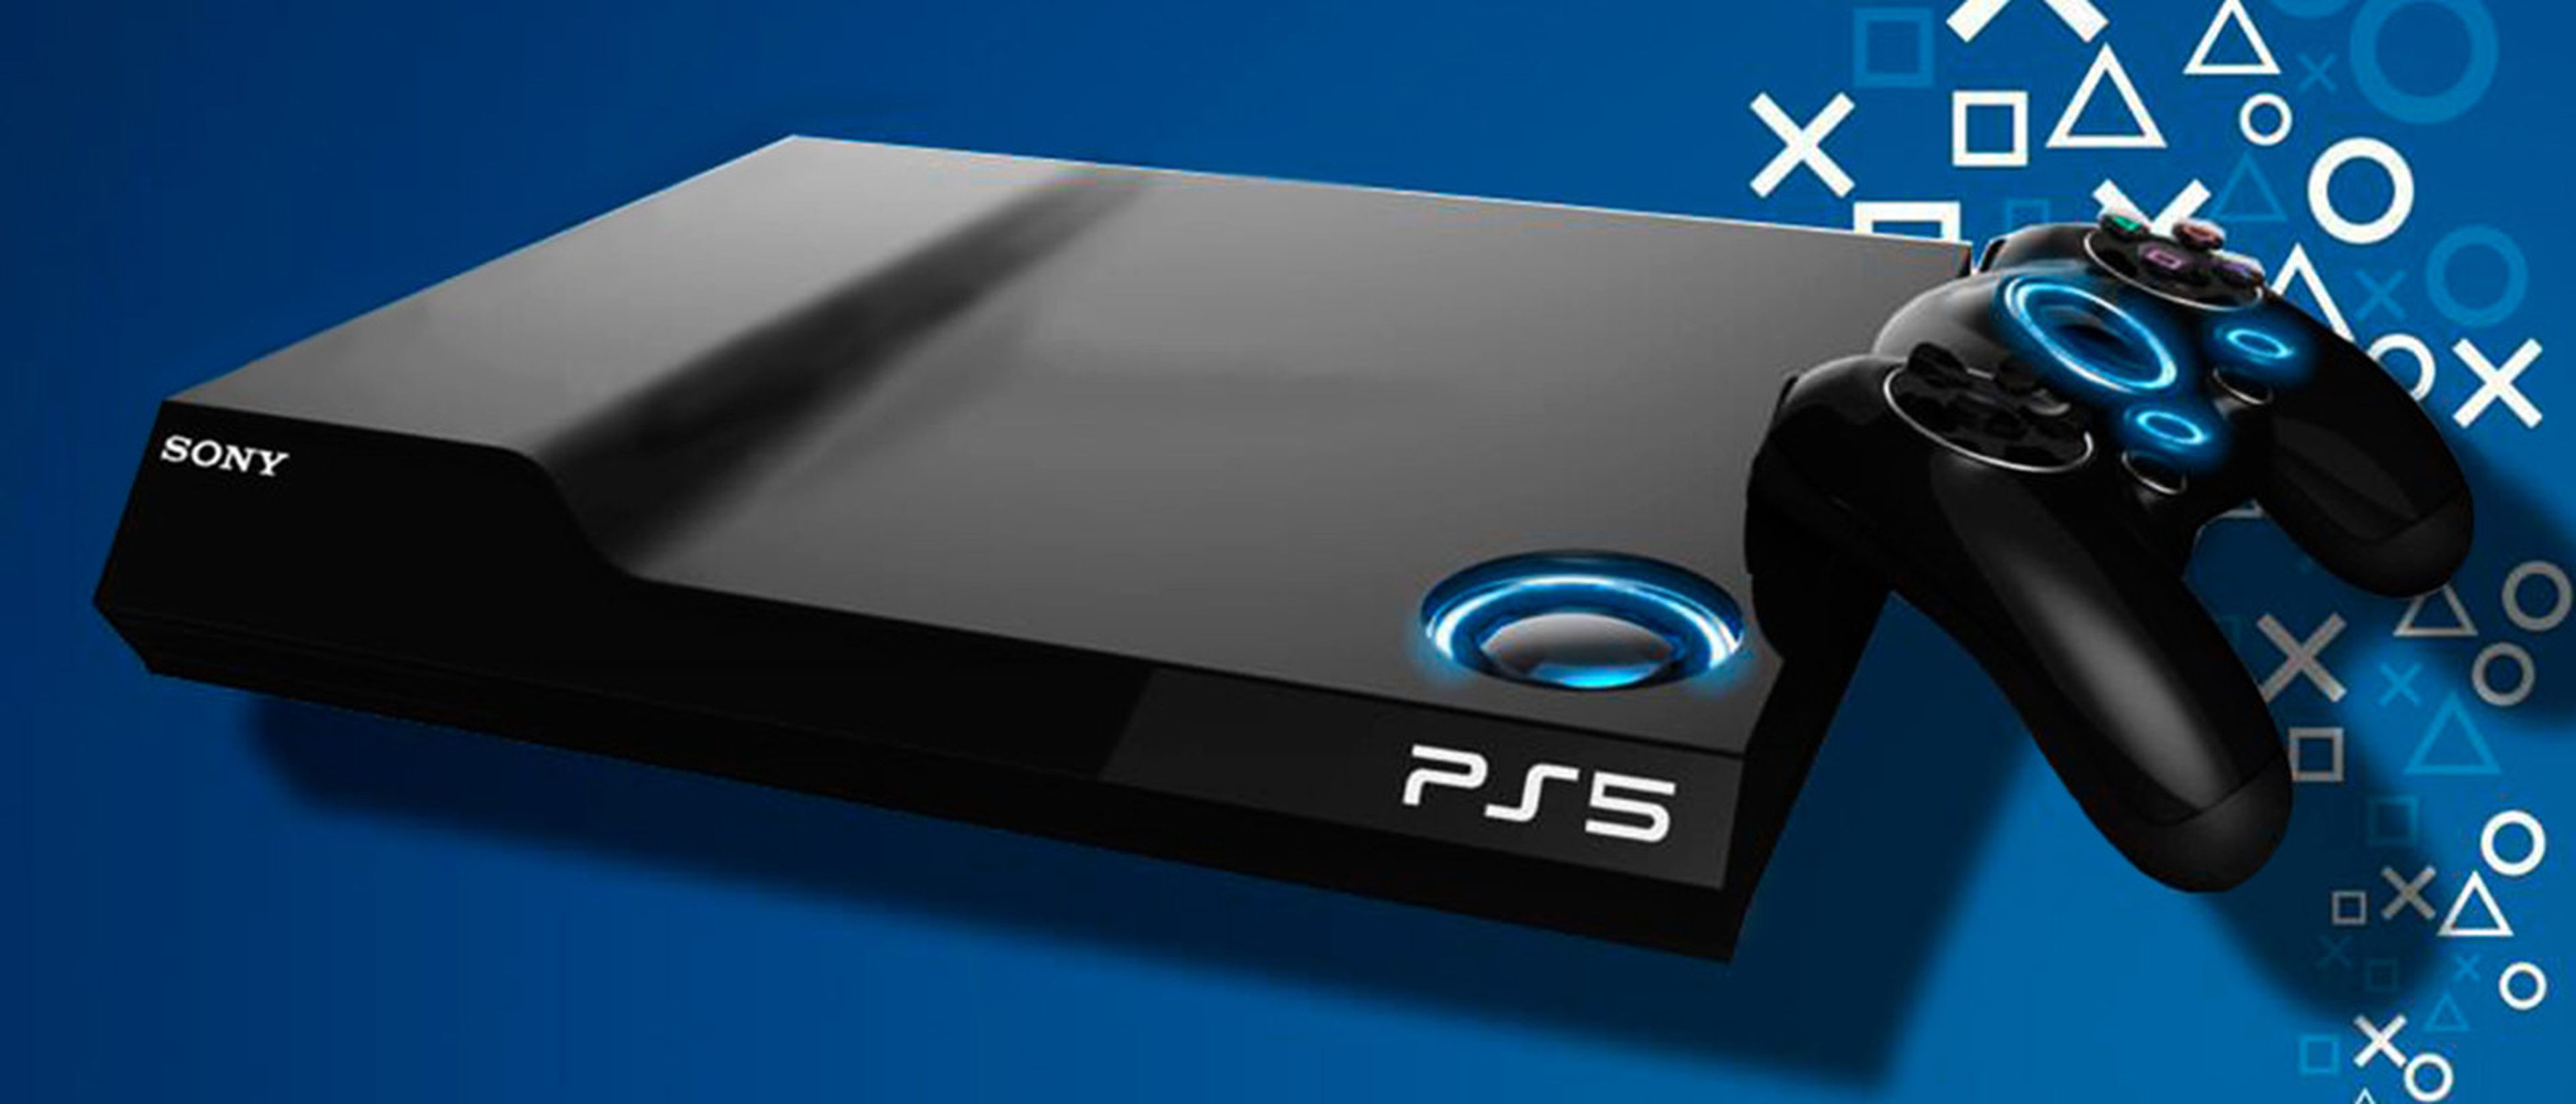 Cuidado: estos mandos competitivos no funcionarán con juegos de PS5